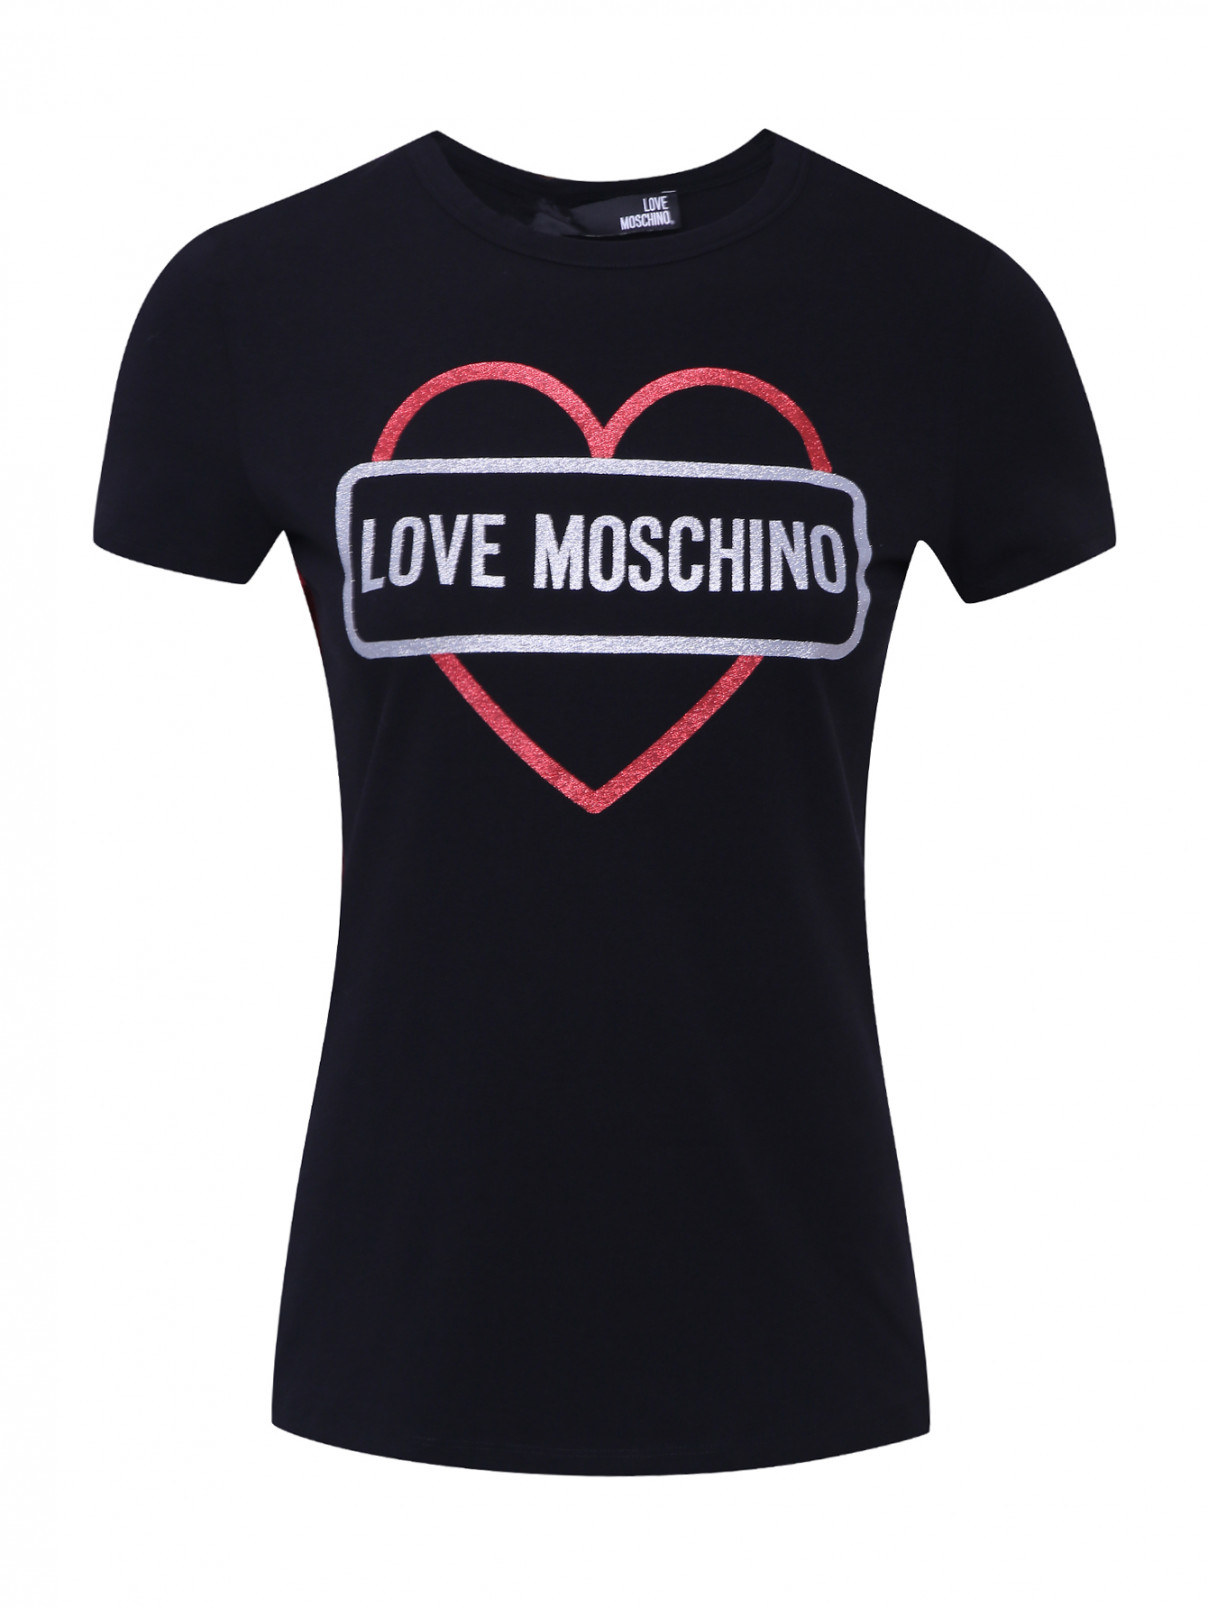 Трикотажная футболка с принтом Love Moschino  –  Общий вид  – Цвет:  Черный